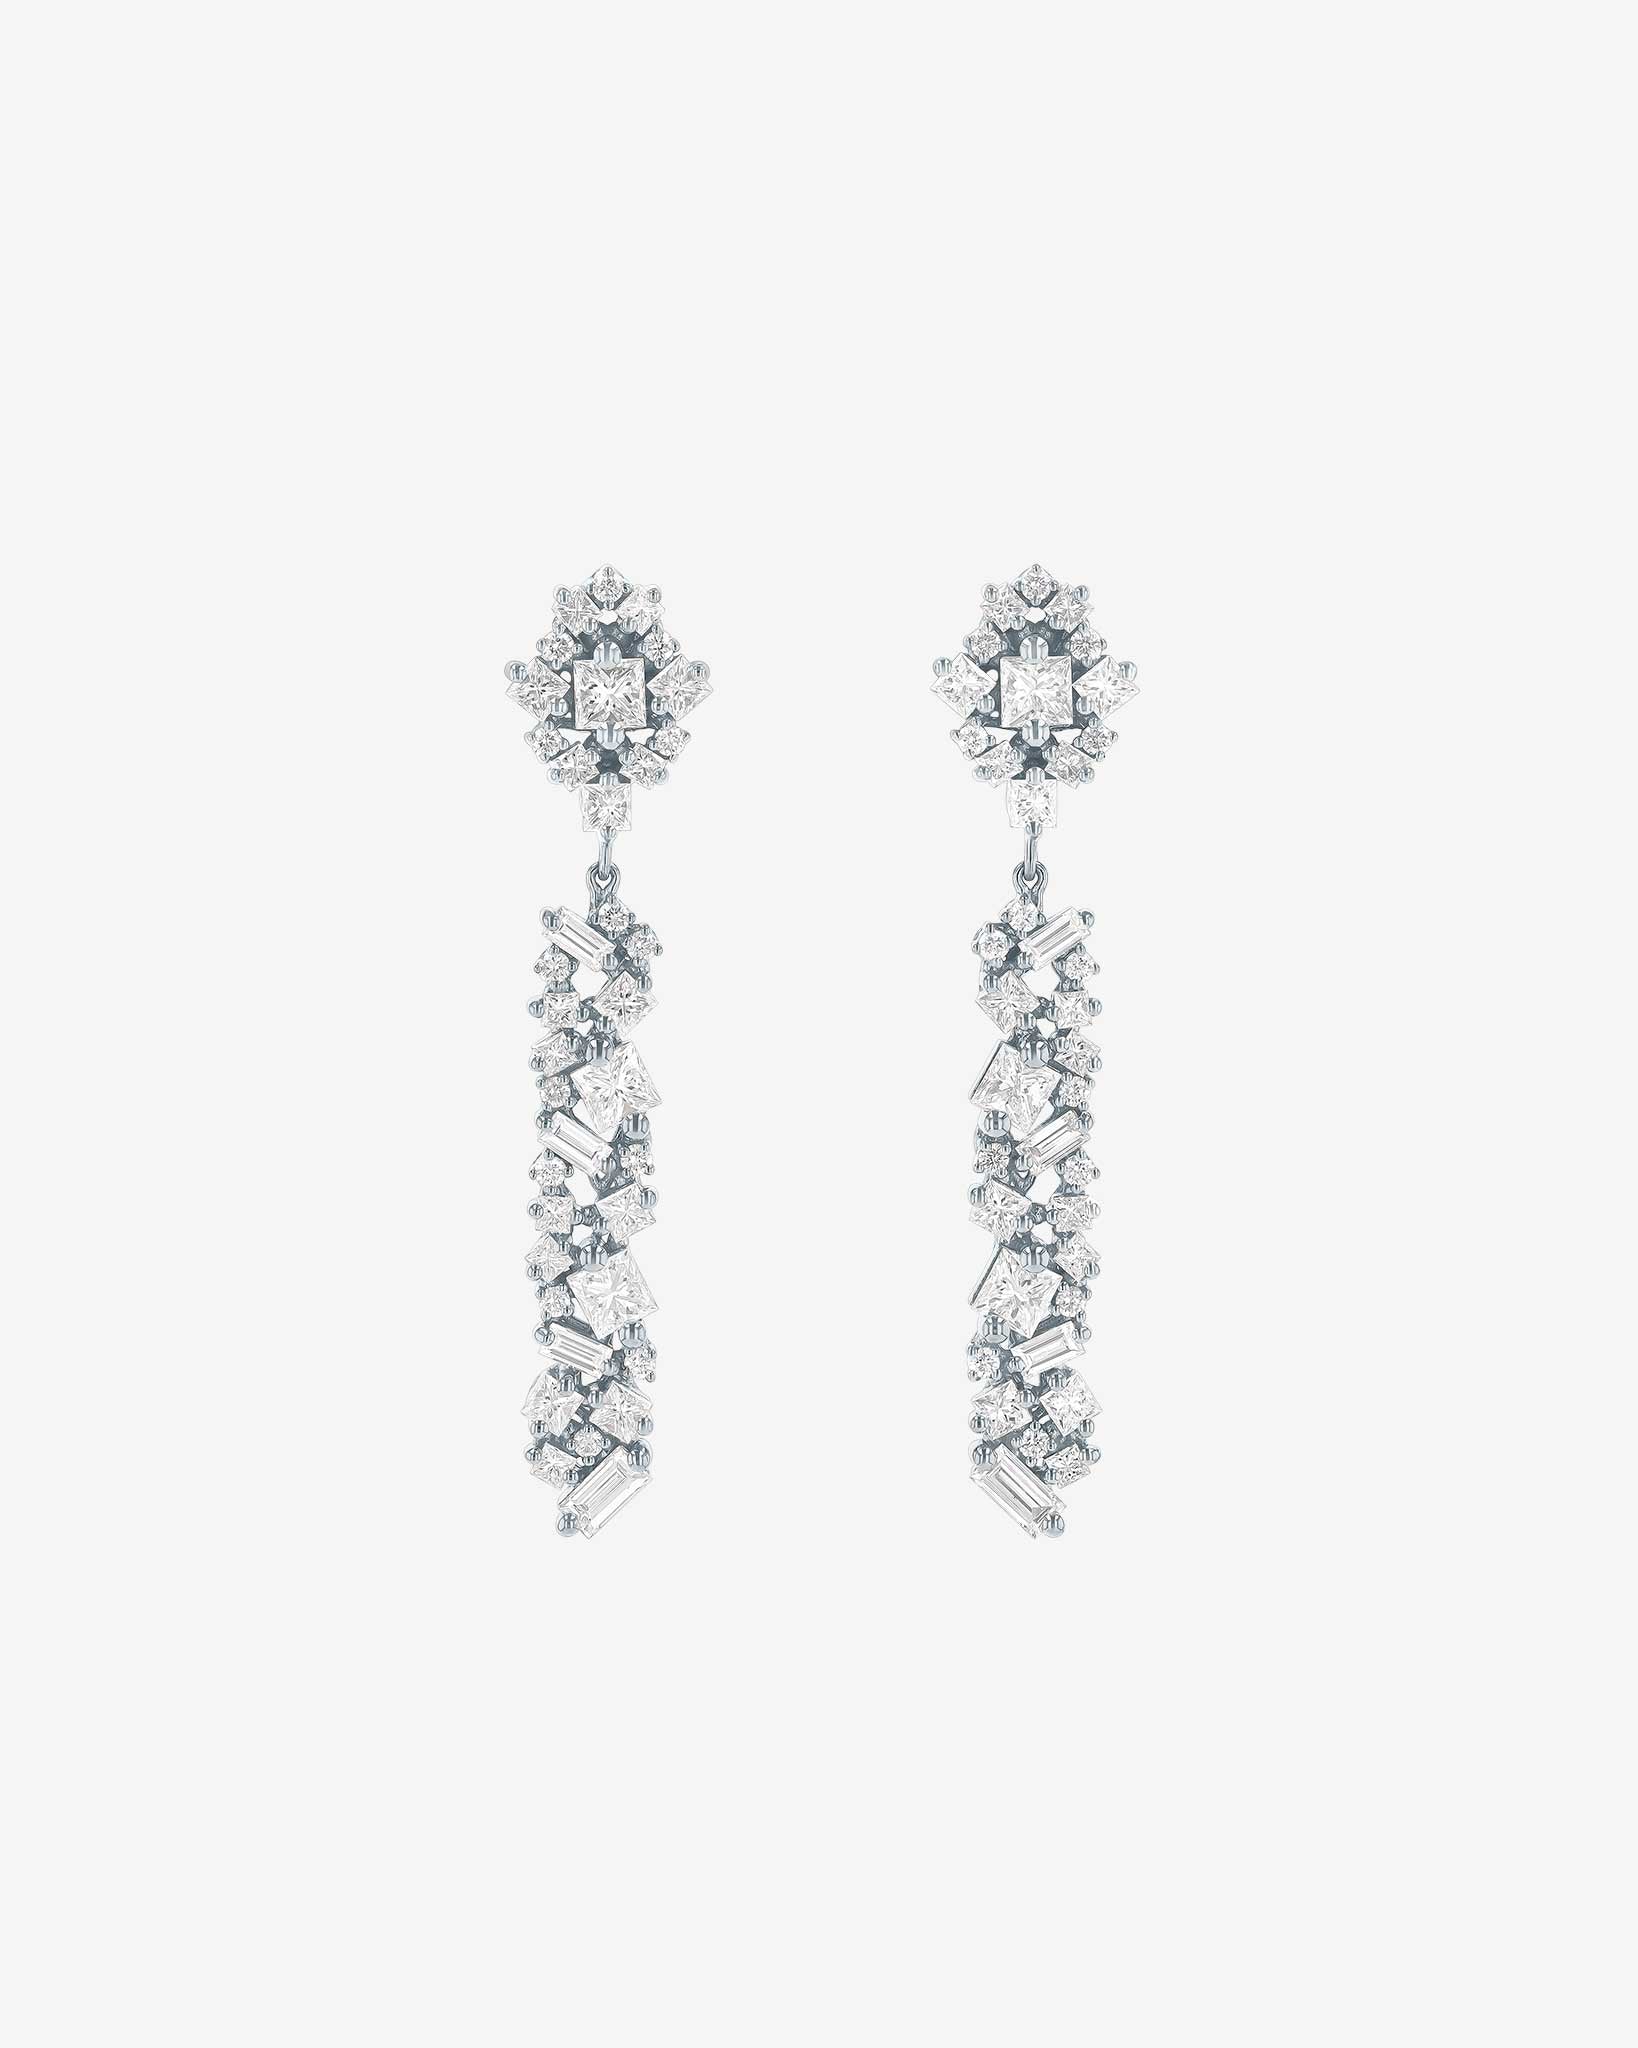 Suzanne Kalan La Fantaisie Sunbeam Diamond Drop Earrings in 18k white gold